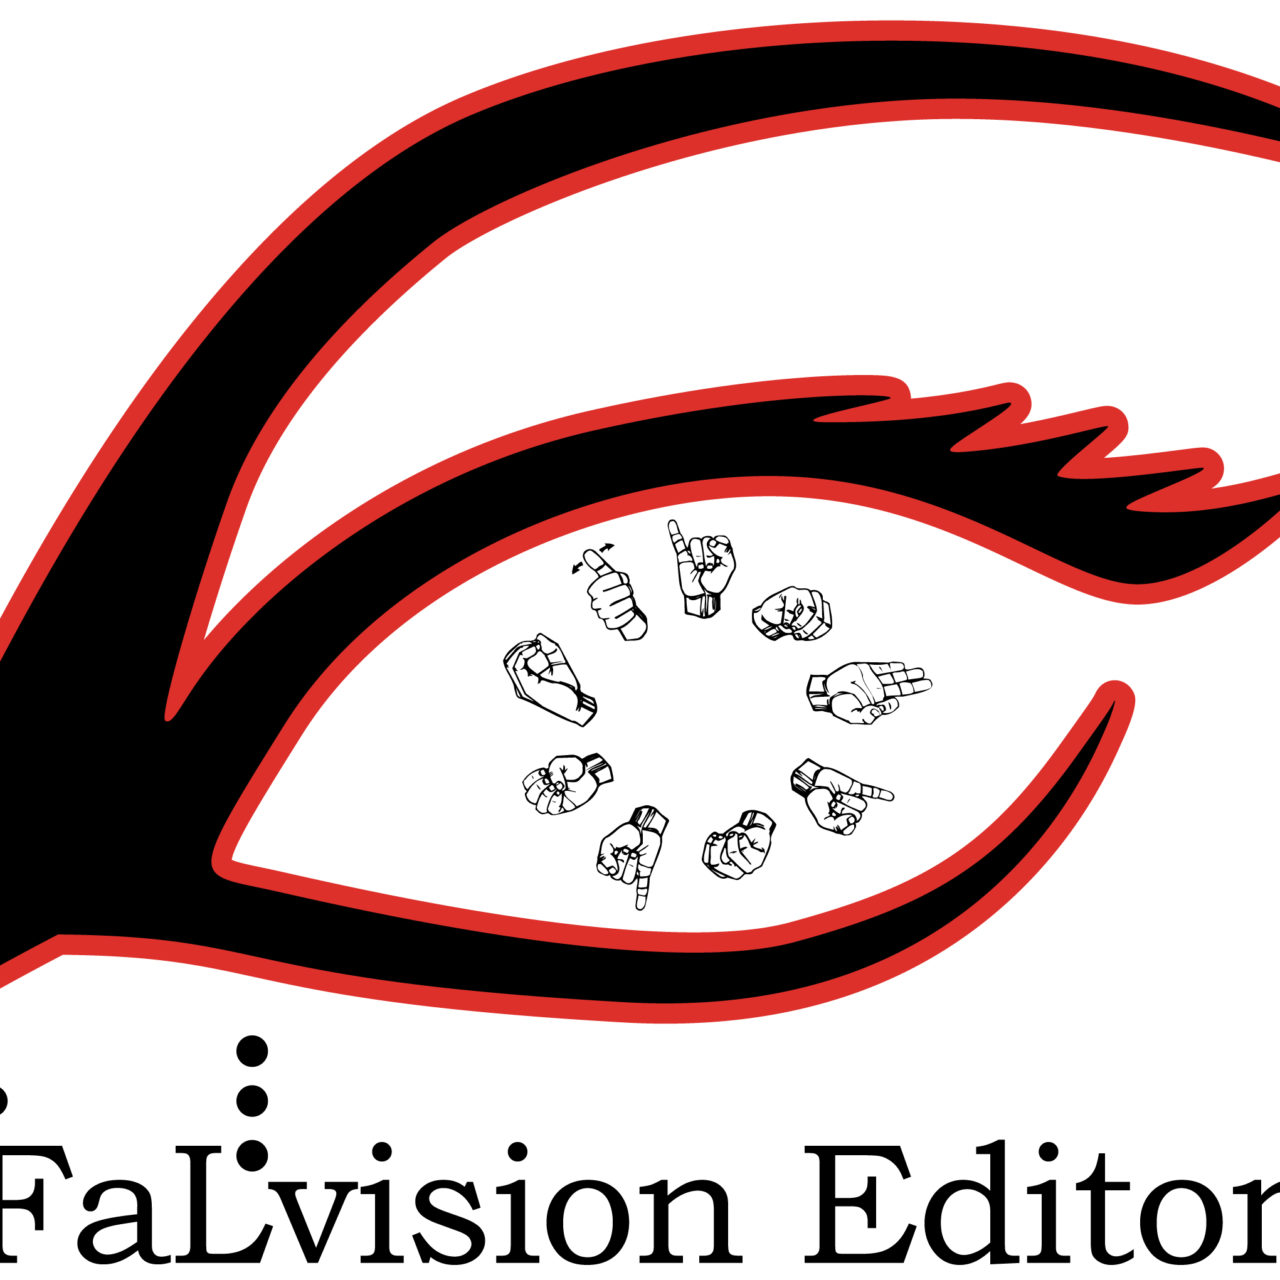 FaLvision Editore